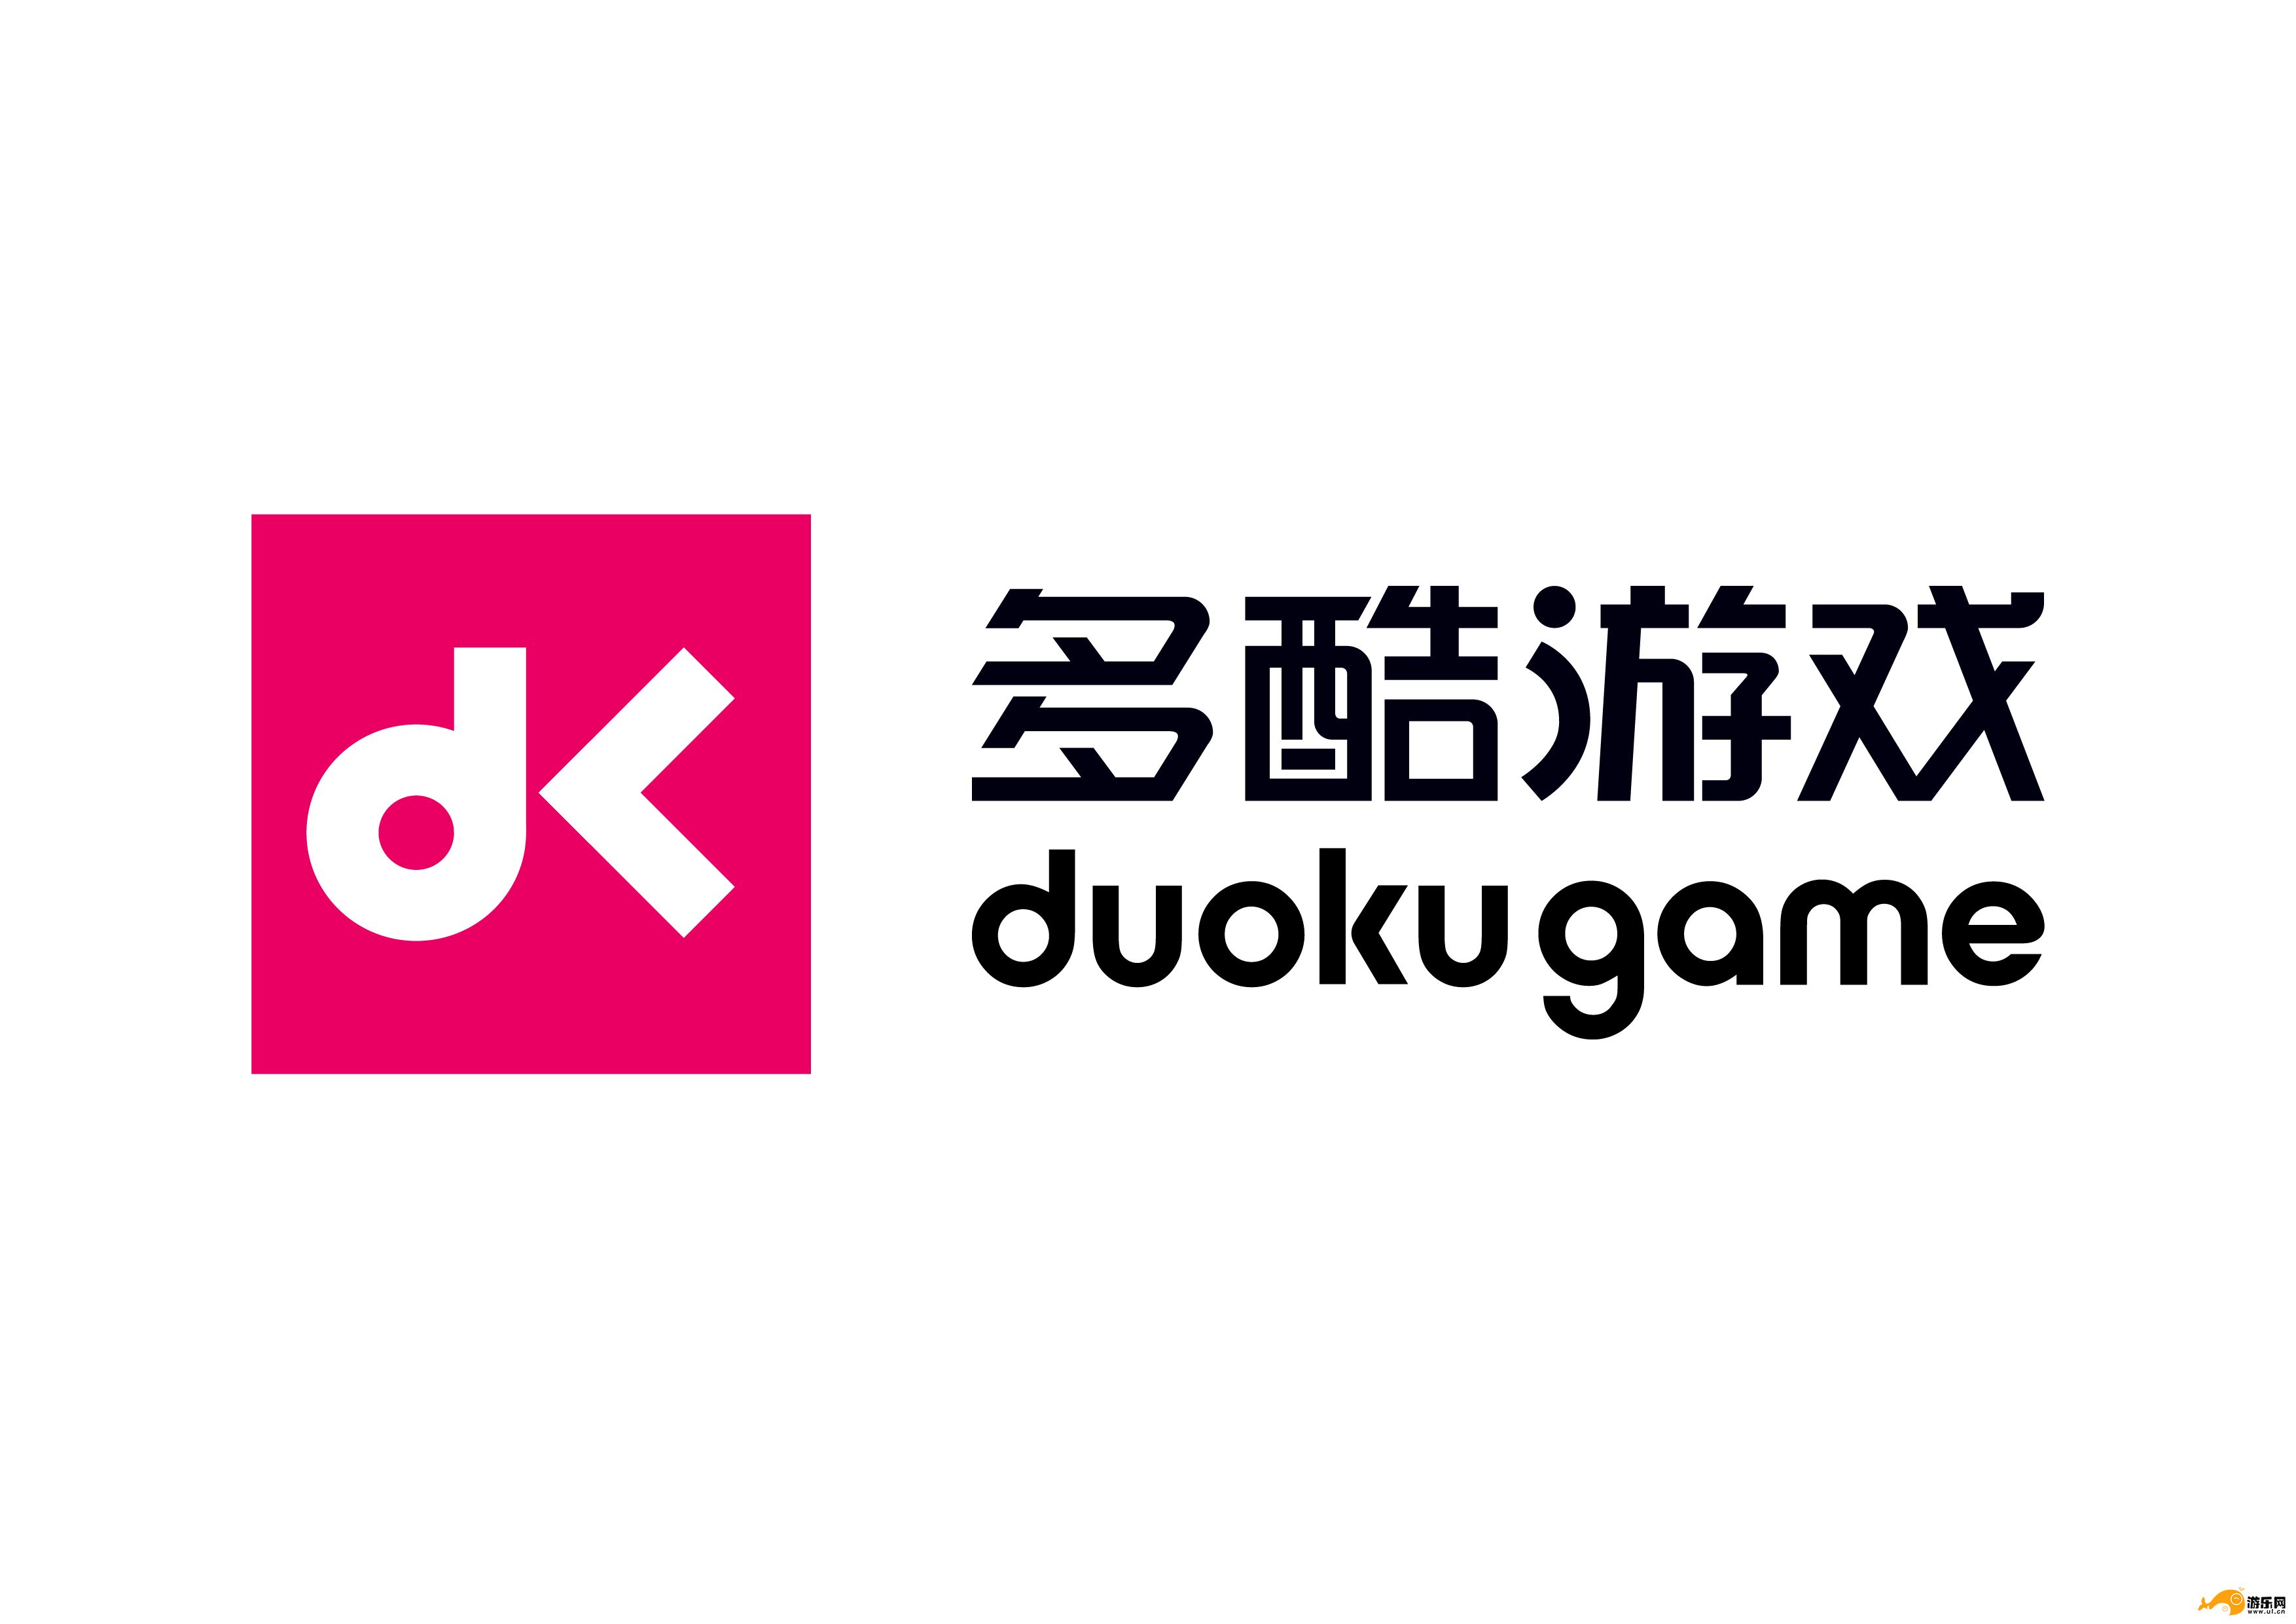 多酷游戏成为2017年度中国游戏产业年会主要赞助商